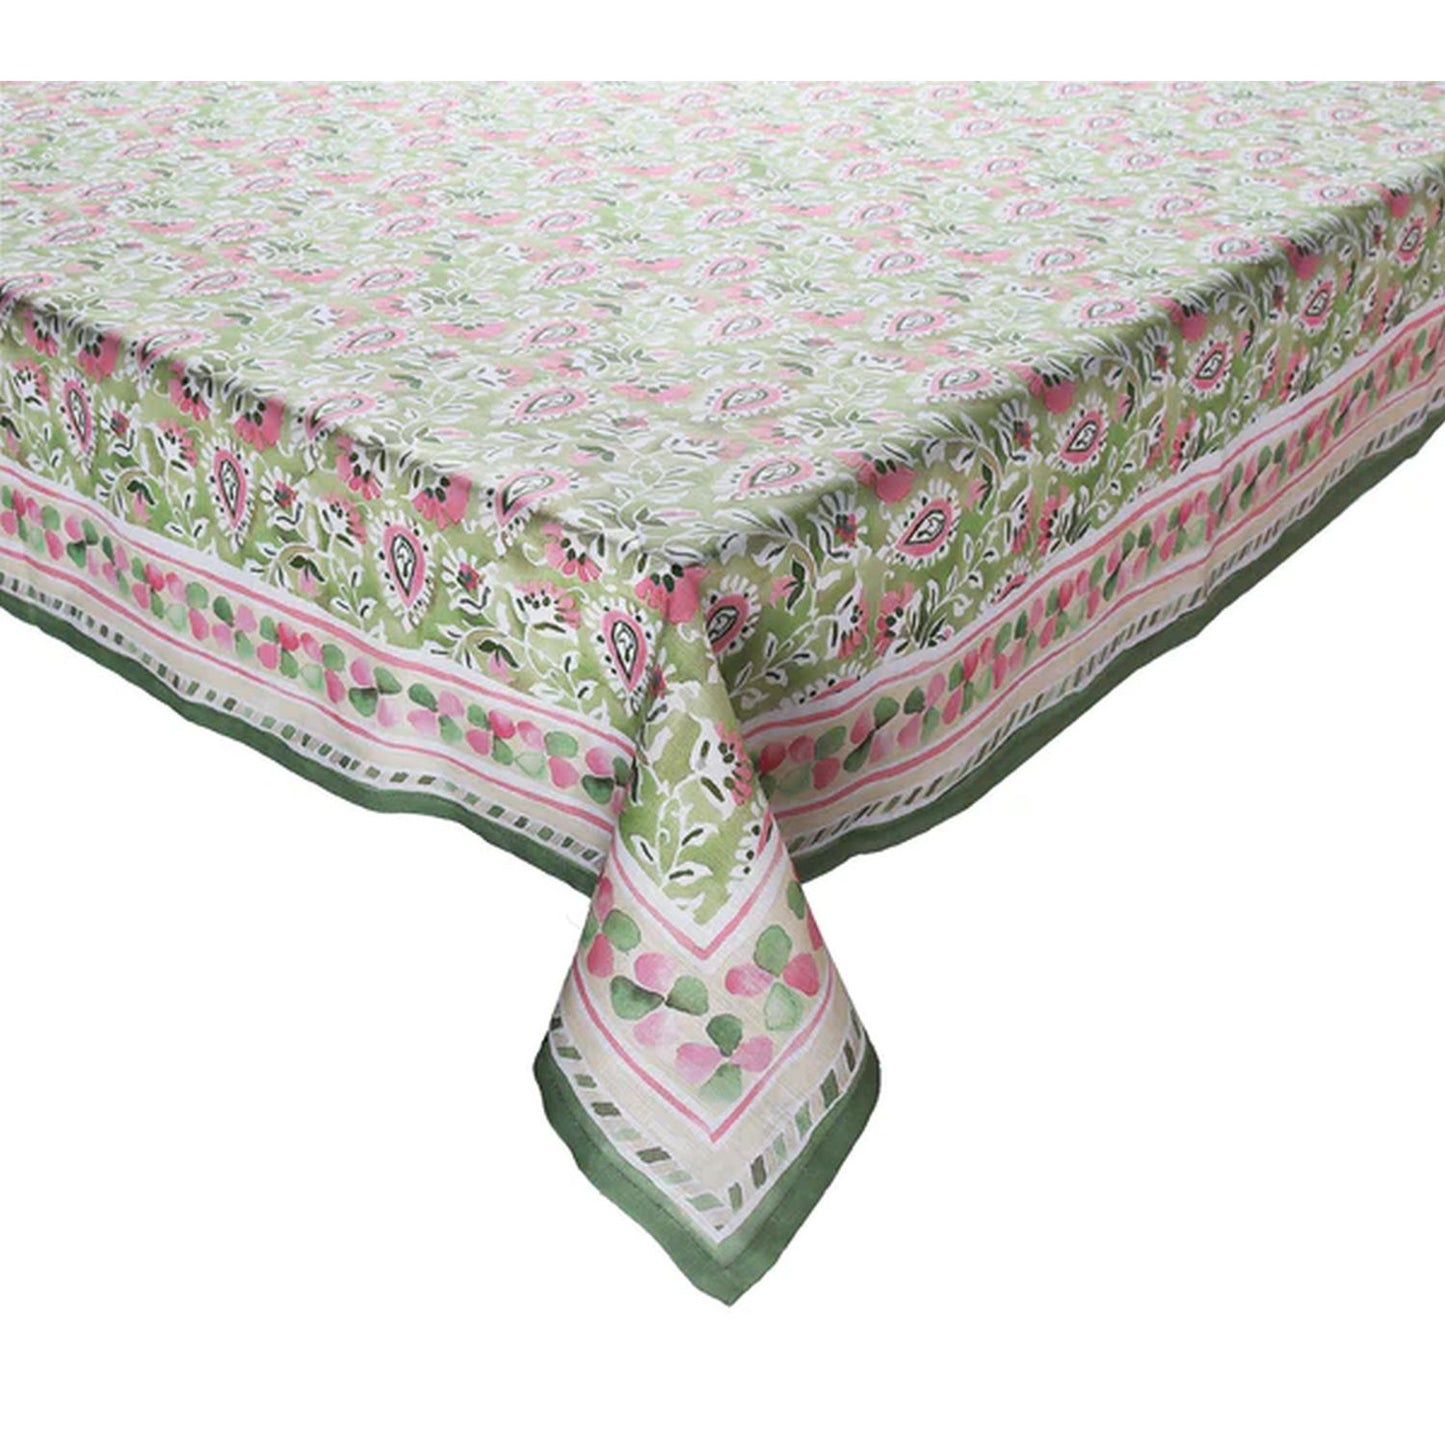 Kim Seybert Mira 54 x 110" Tablecloth in Green & Pink